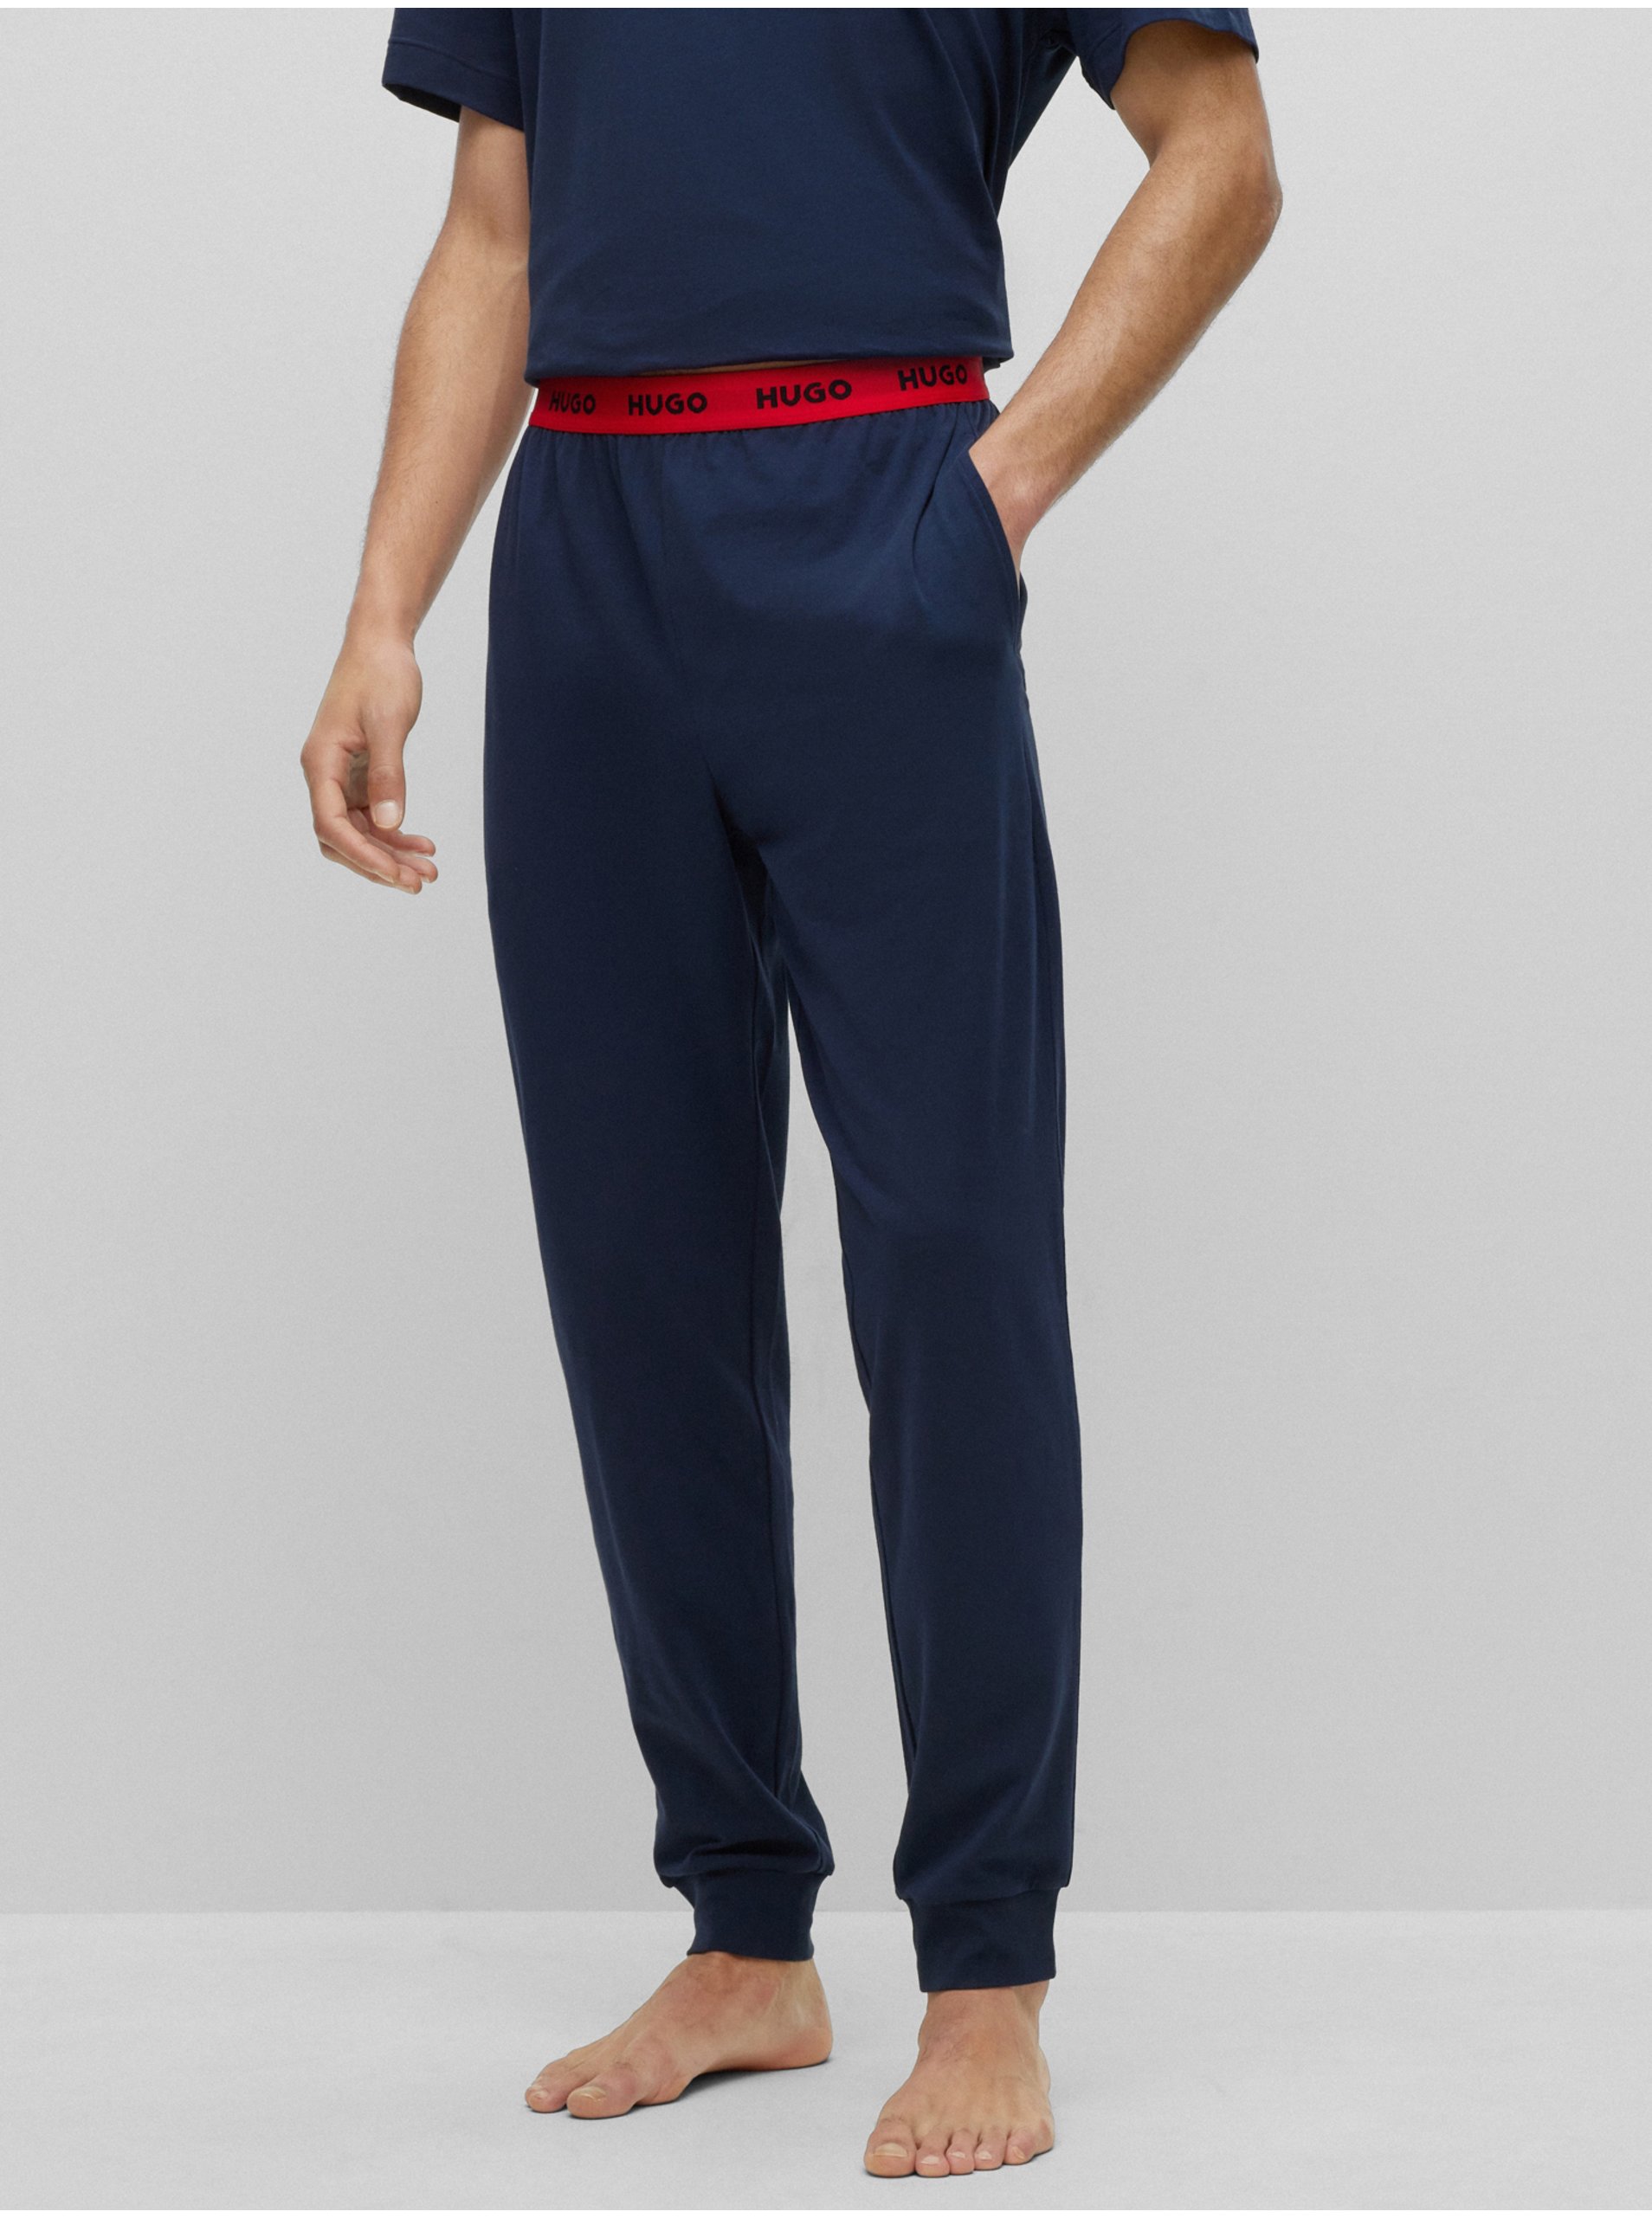 Lacno Tmavomodré pánske pyžamové nohavice HUGO